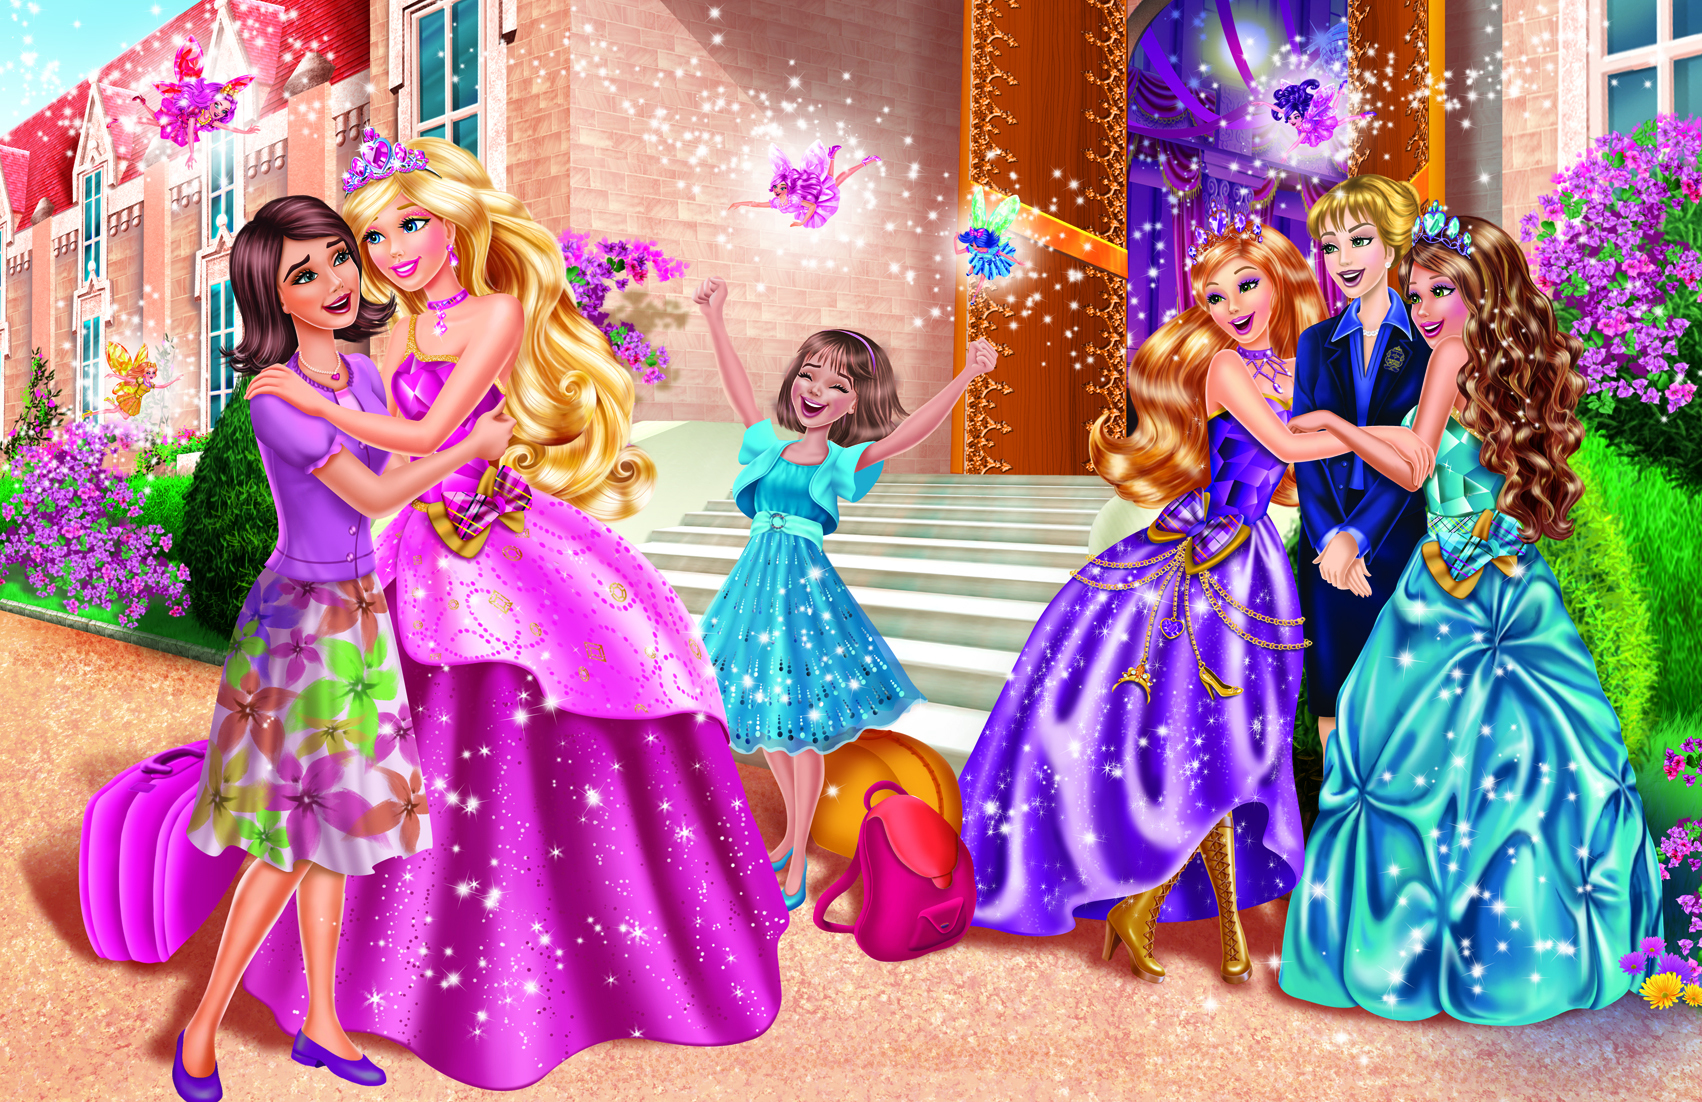 barbie in princess charm school full movie